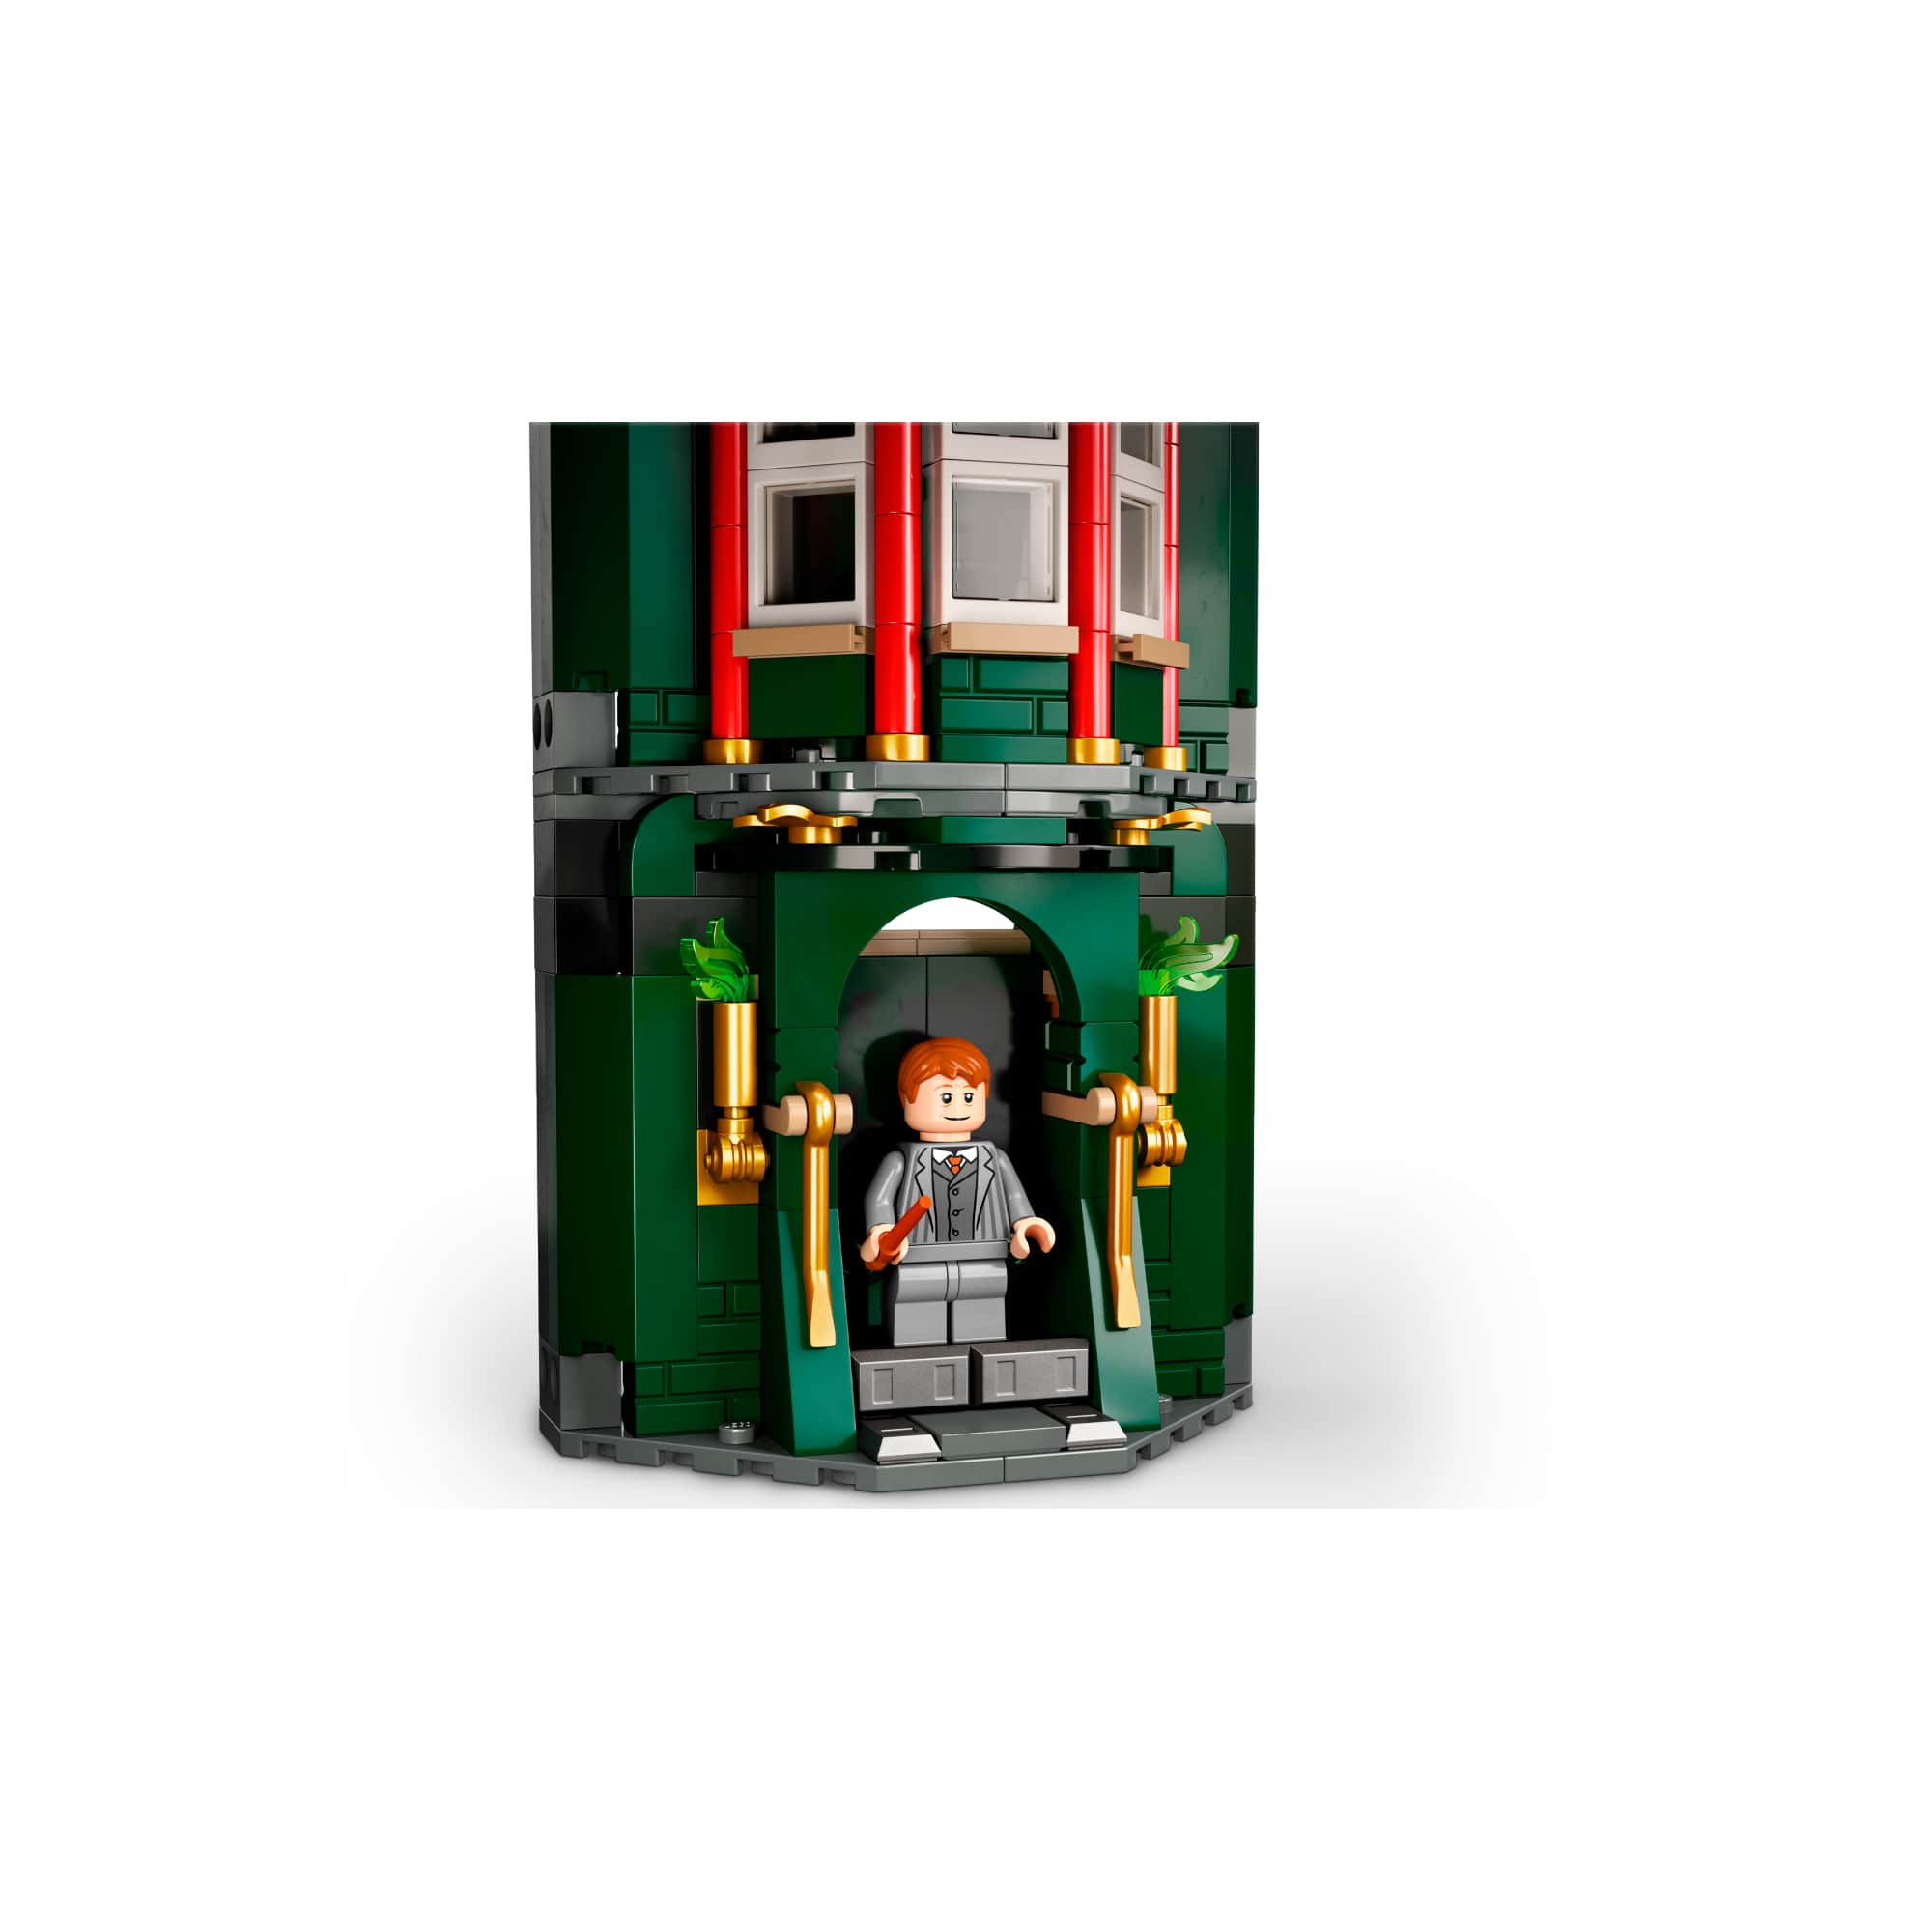 O Misterio Da Magia Harry Potter 990 Peças 76403 - Lego